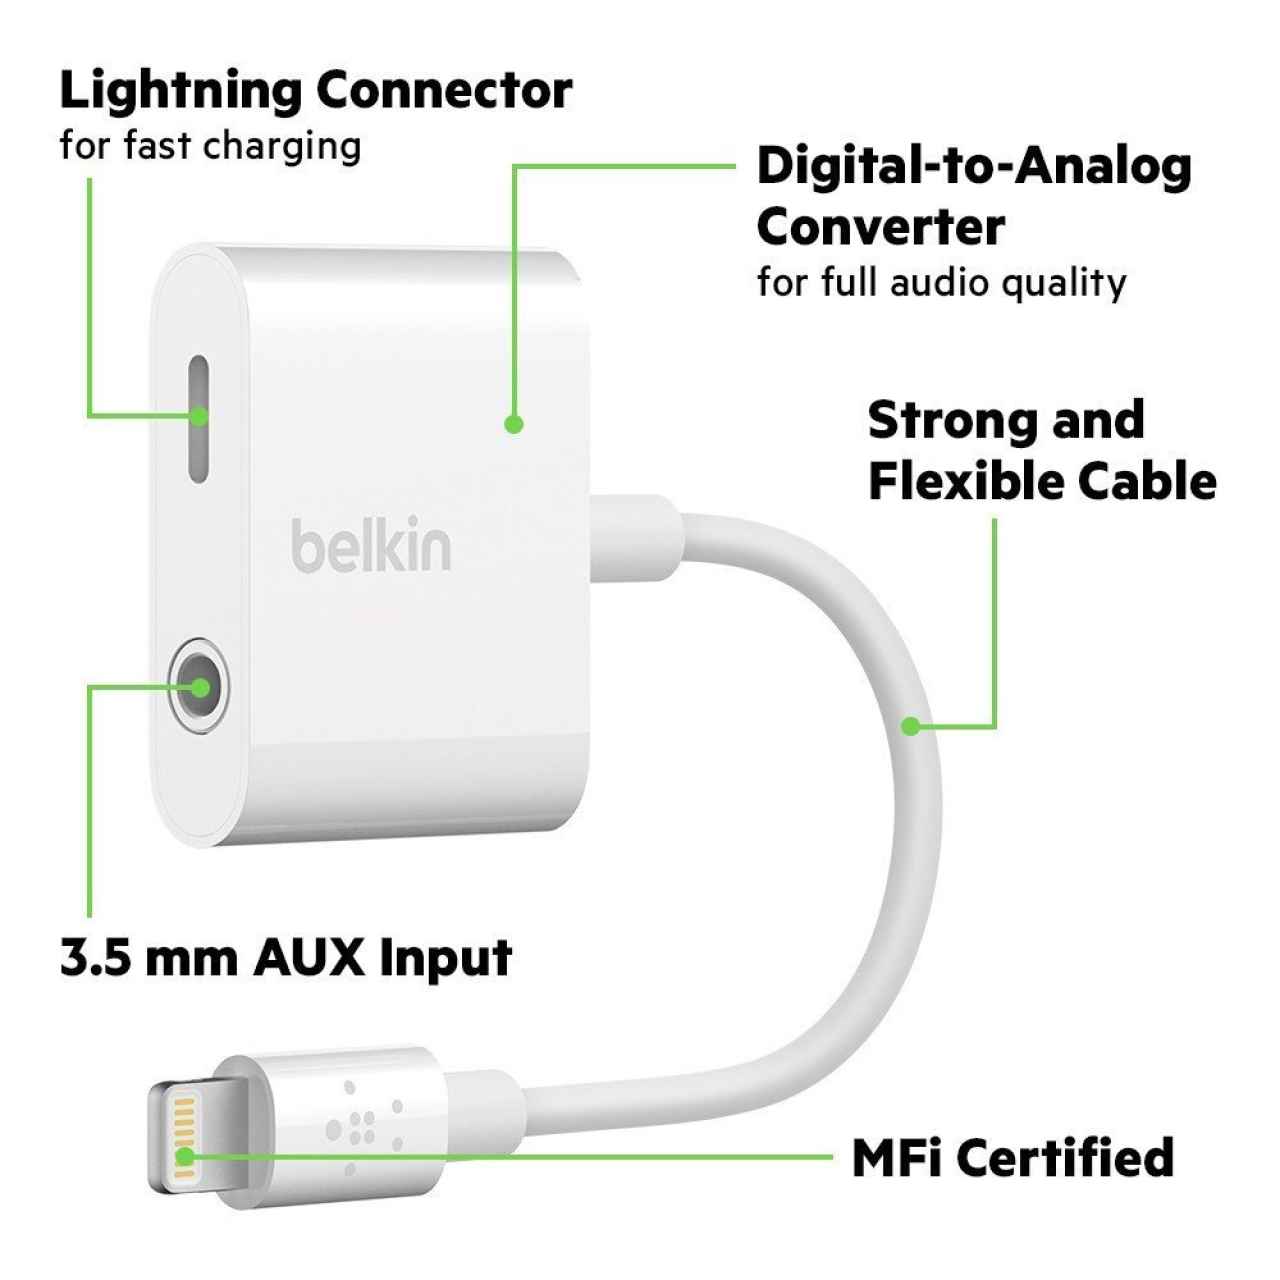 Adaptador Lightning A toma de auriculares 3.5MM Apple - Adaptadores